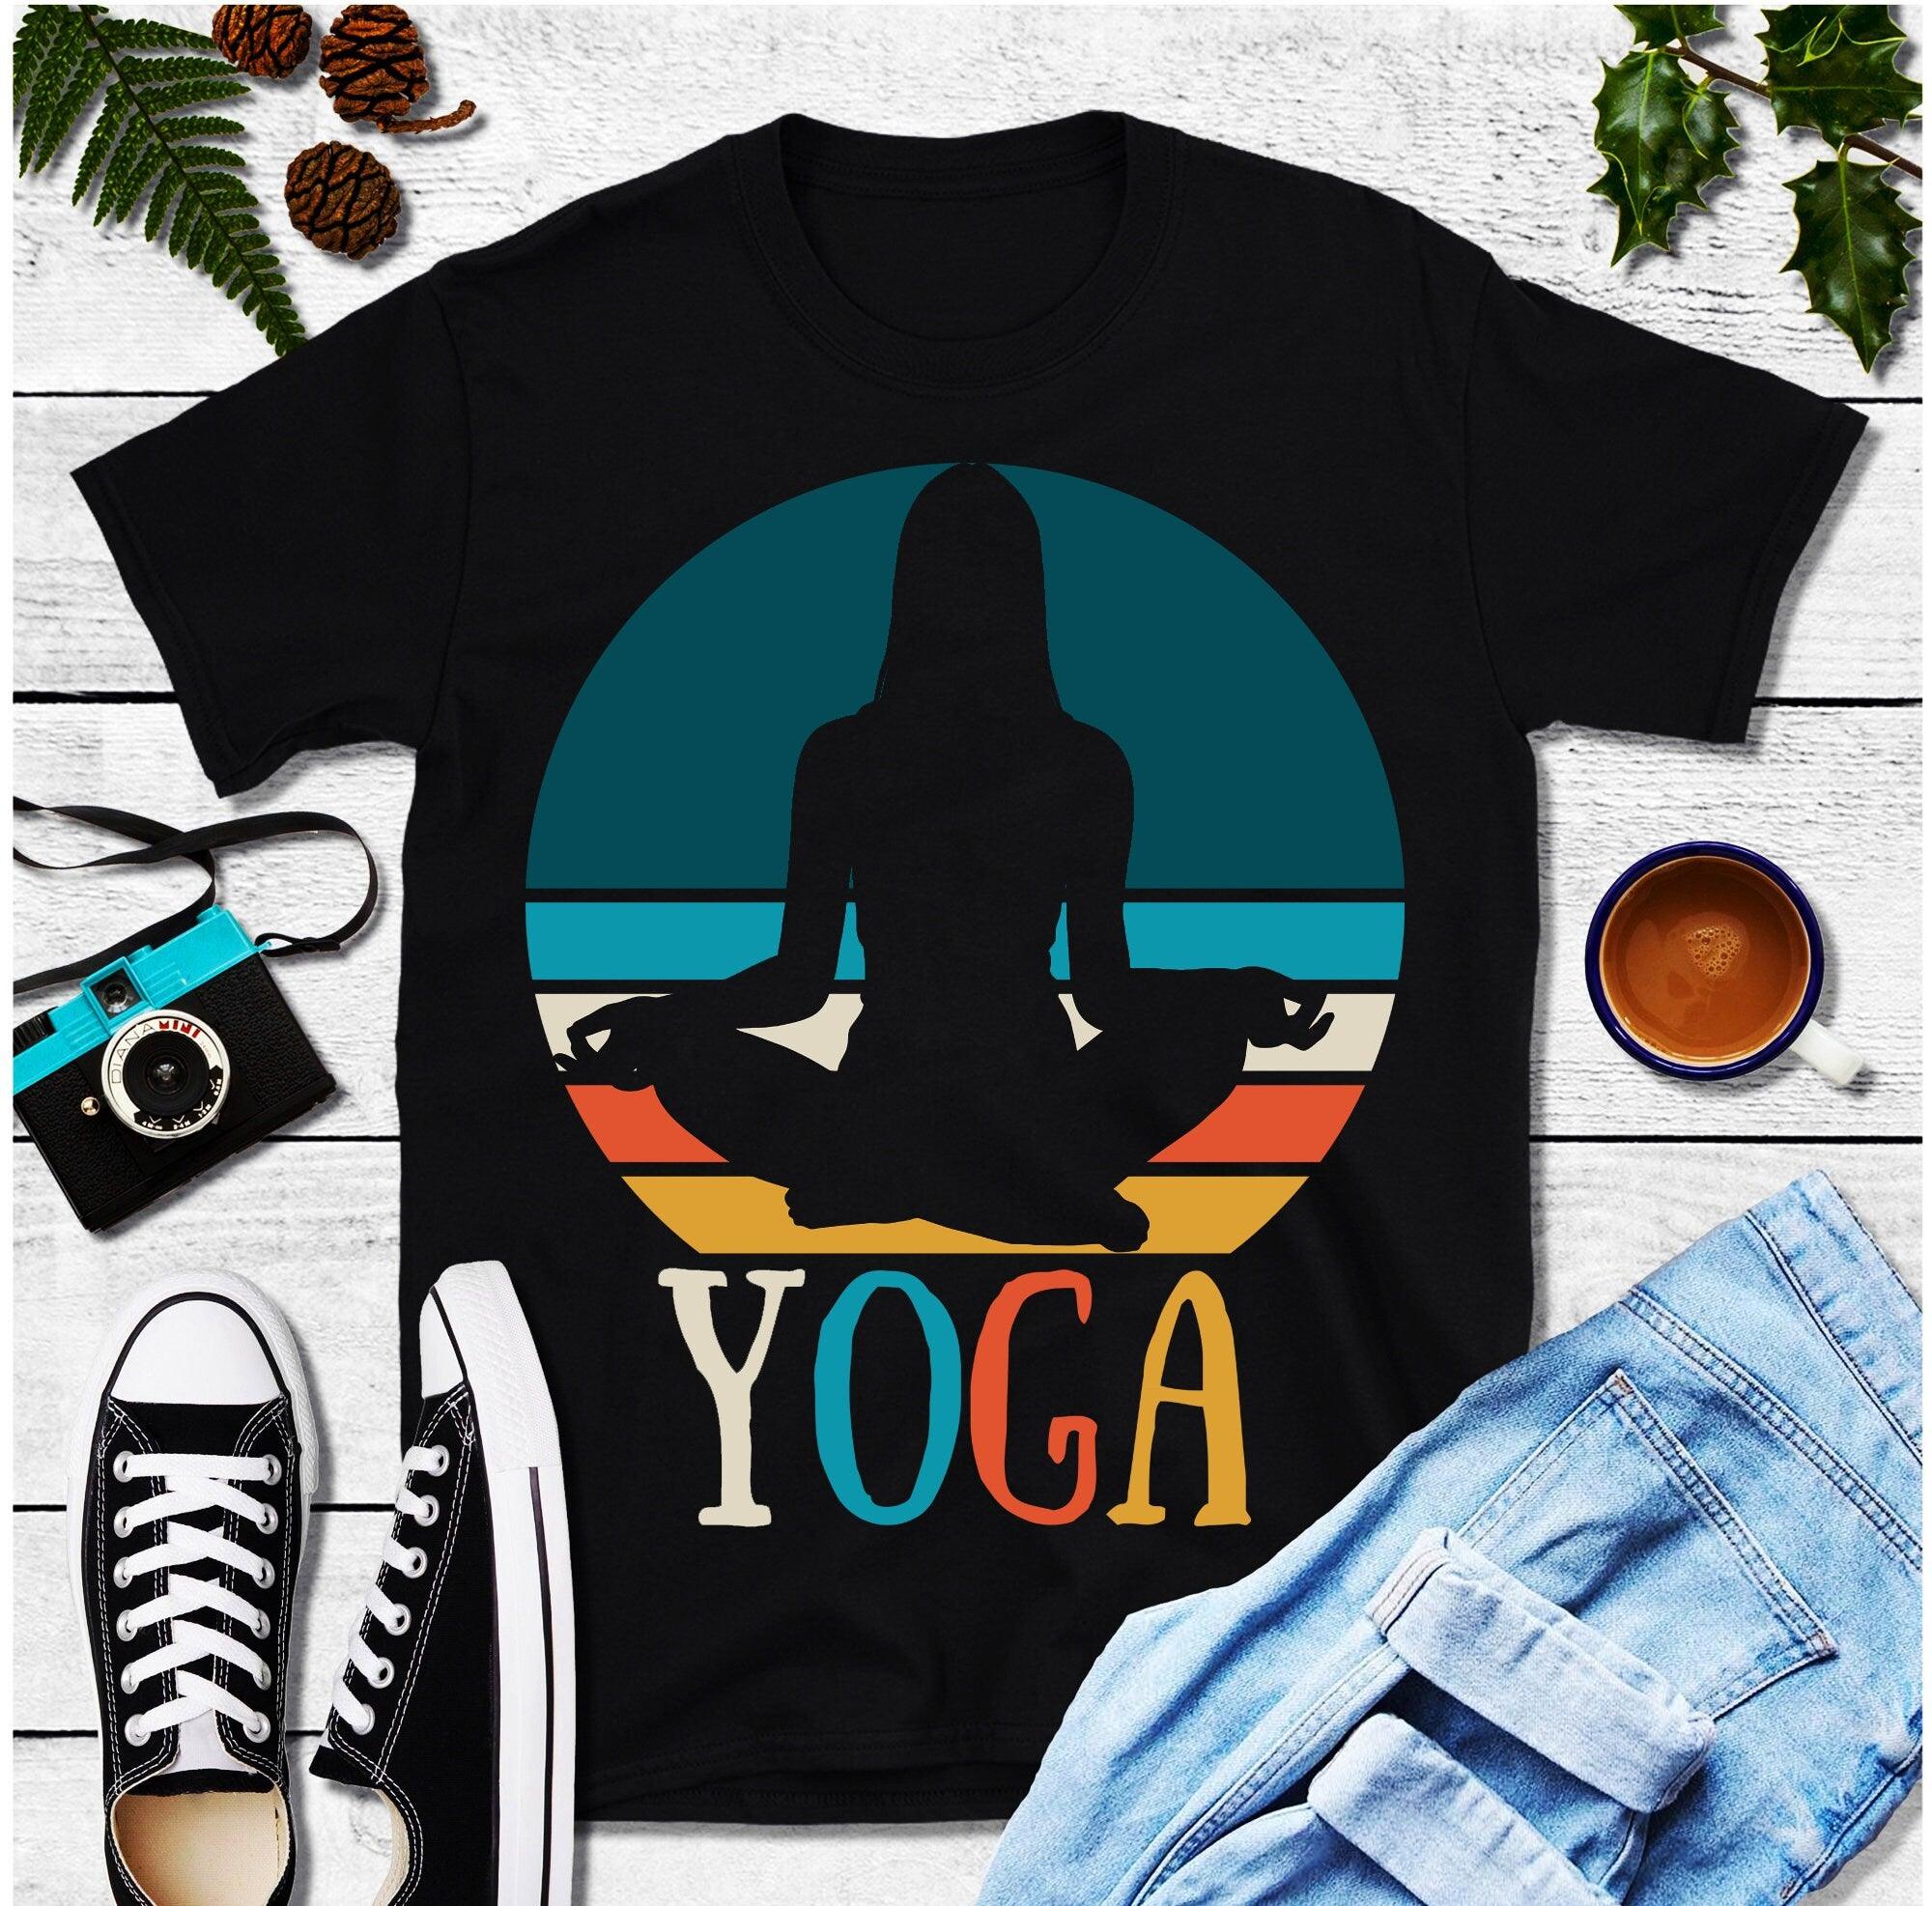 ヨガガール |レトロサンセットTシャツ、ヨガギフトシャツ、ナマステシャツ、ヨギへのギフト、ヨガ愛好家シャツ、瞑想シャツ、ヨガTシャツ、ヨガTシャツ - plusminusco.com